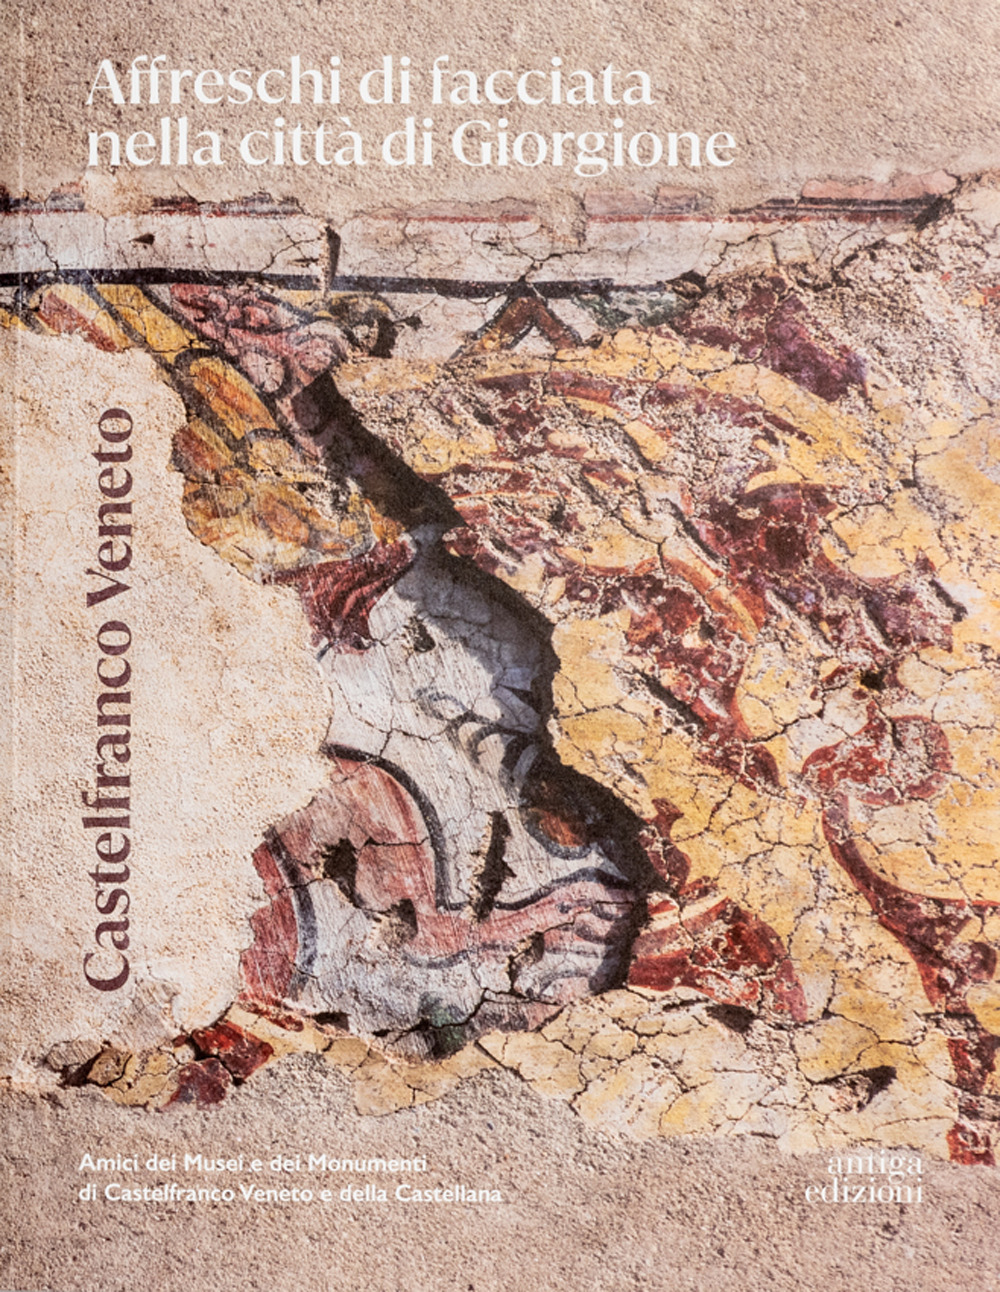 Castelfranco Veneto. Affreschi di facciata nella città di Giorgione. Ediz. illustrata